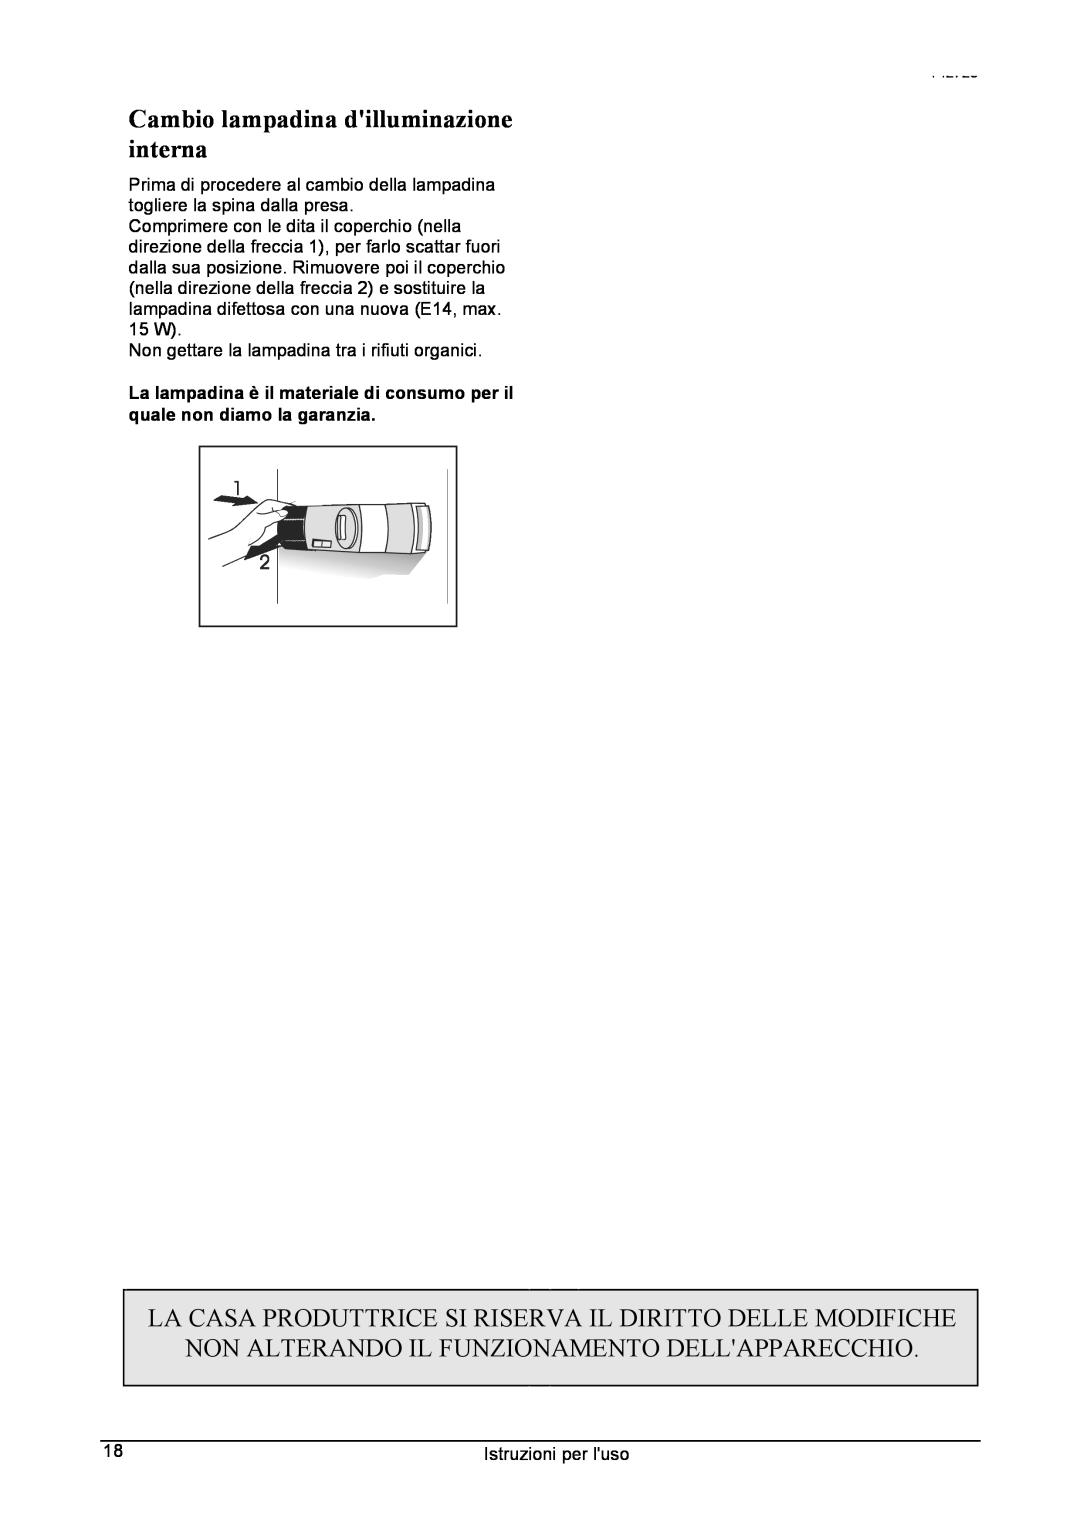 Smeg 142725 manual Cambio lampadina dilluminazione interna, La Casa Produttrice Si Riserva Il Diritto Delle Modifiche 